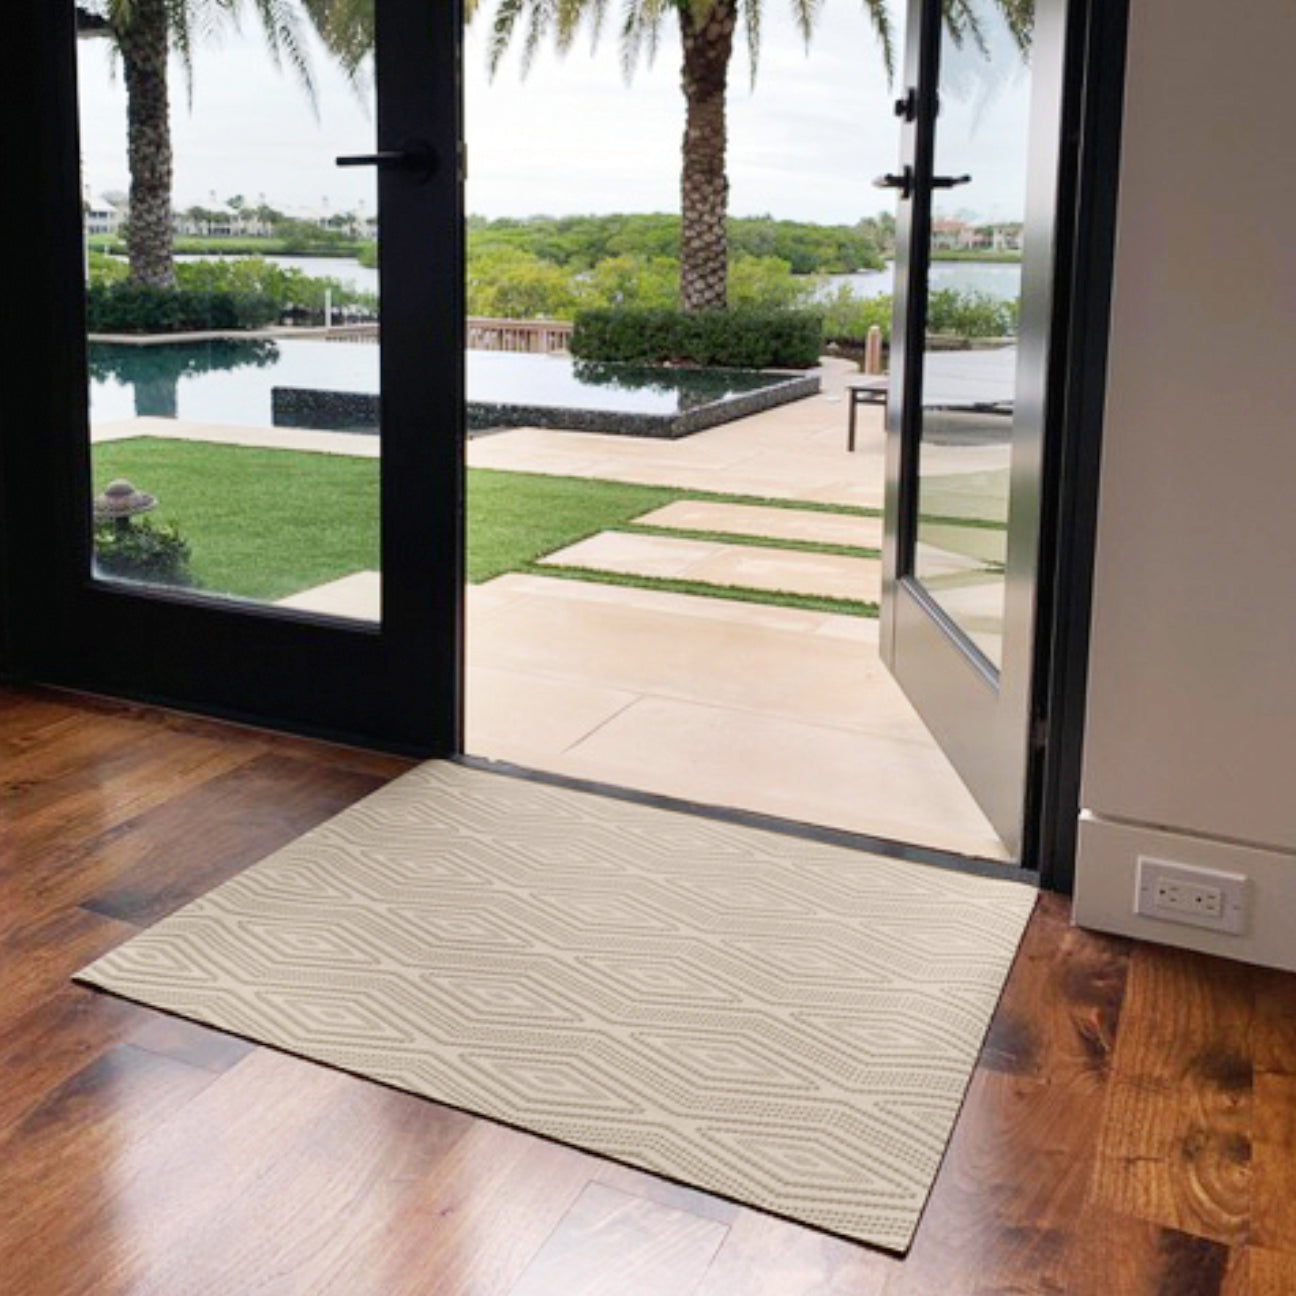 Abert Non-Slip Outdoor Doormat  Door mat, Outdoor door mat, Large door mats